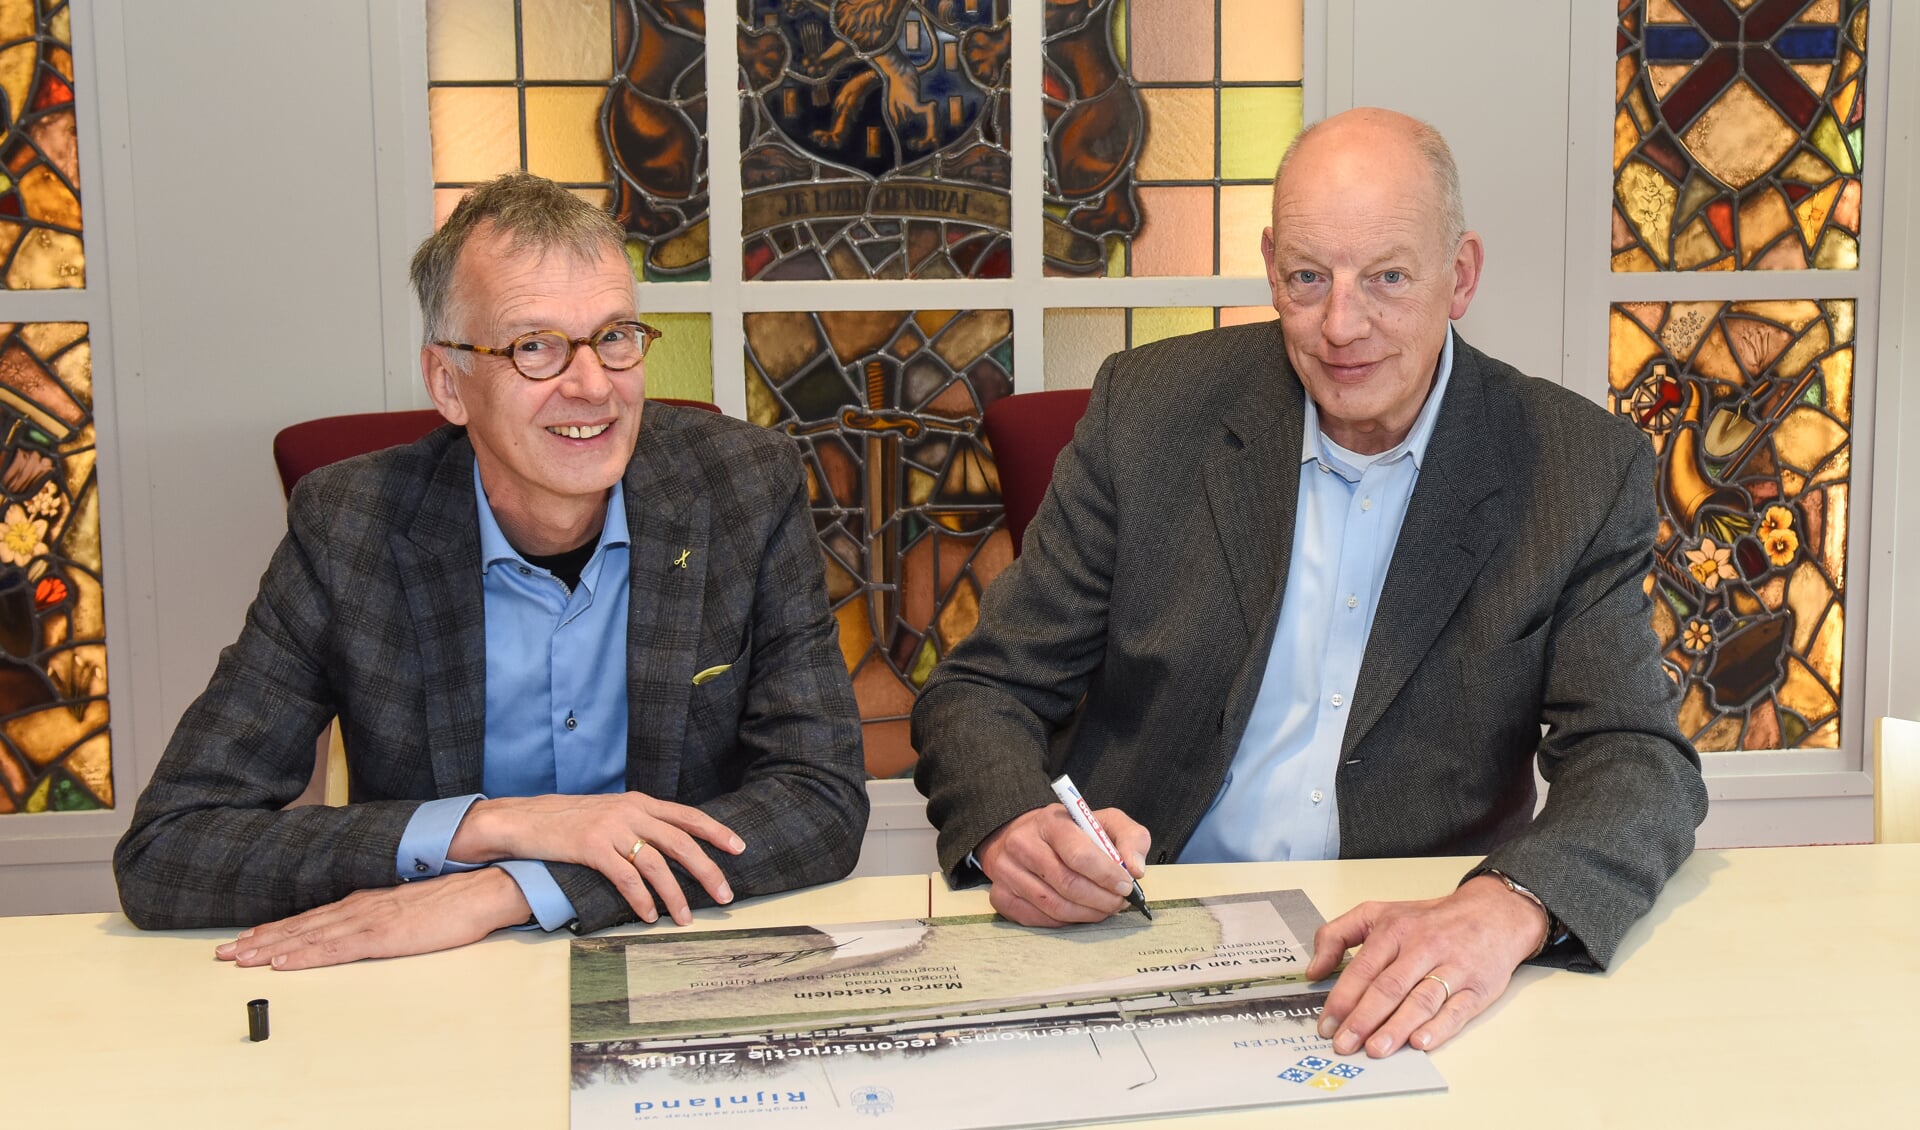 Wethouder Kees van Velzen en hoogheemraad Marco Kastelein tekenen de Samenwerkingsovereenkomst ‘Dijkverbetering en reconstructie Zijldijk’. | Foto: Rokki fotografie